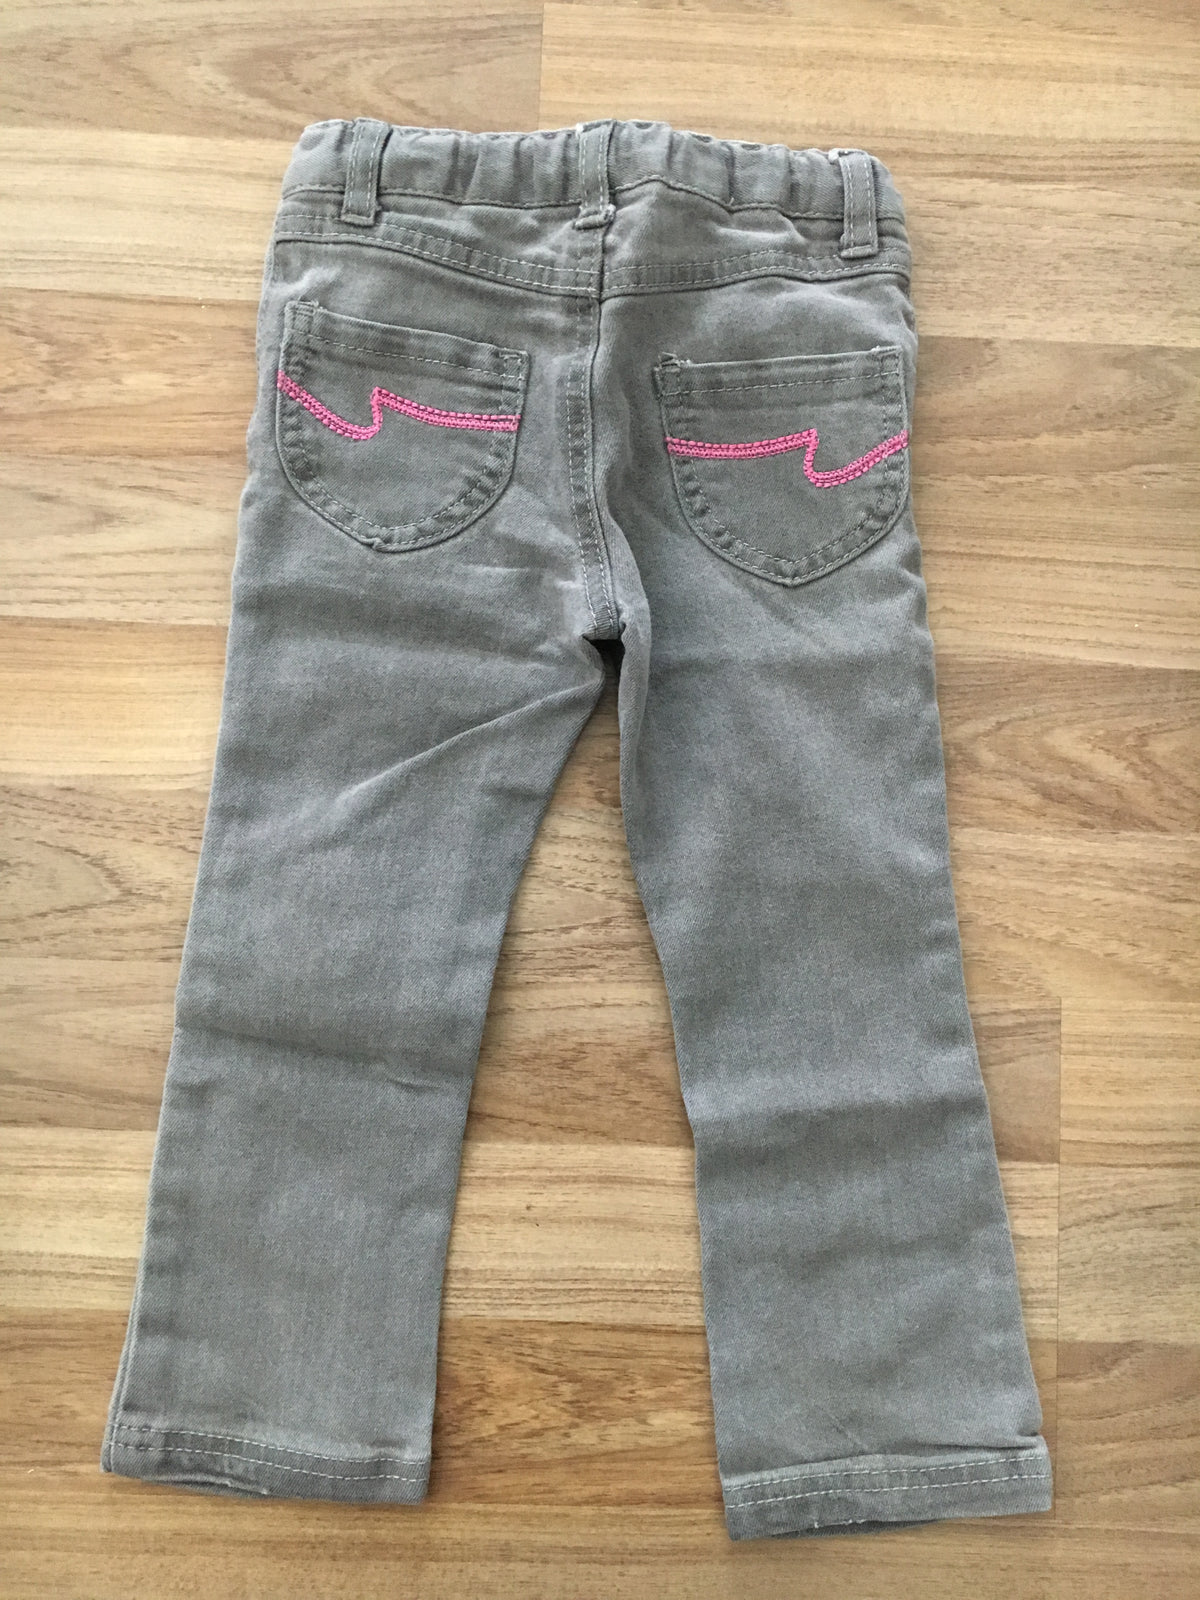 Lightweight Jeans (Girls Size 3)